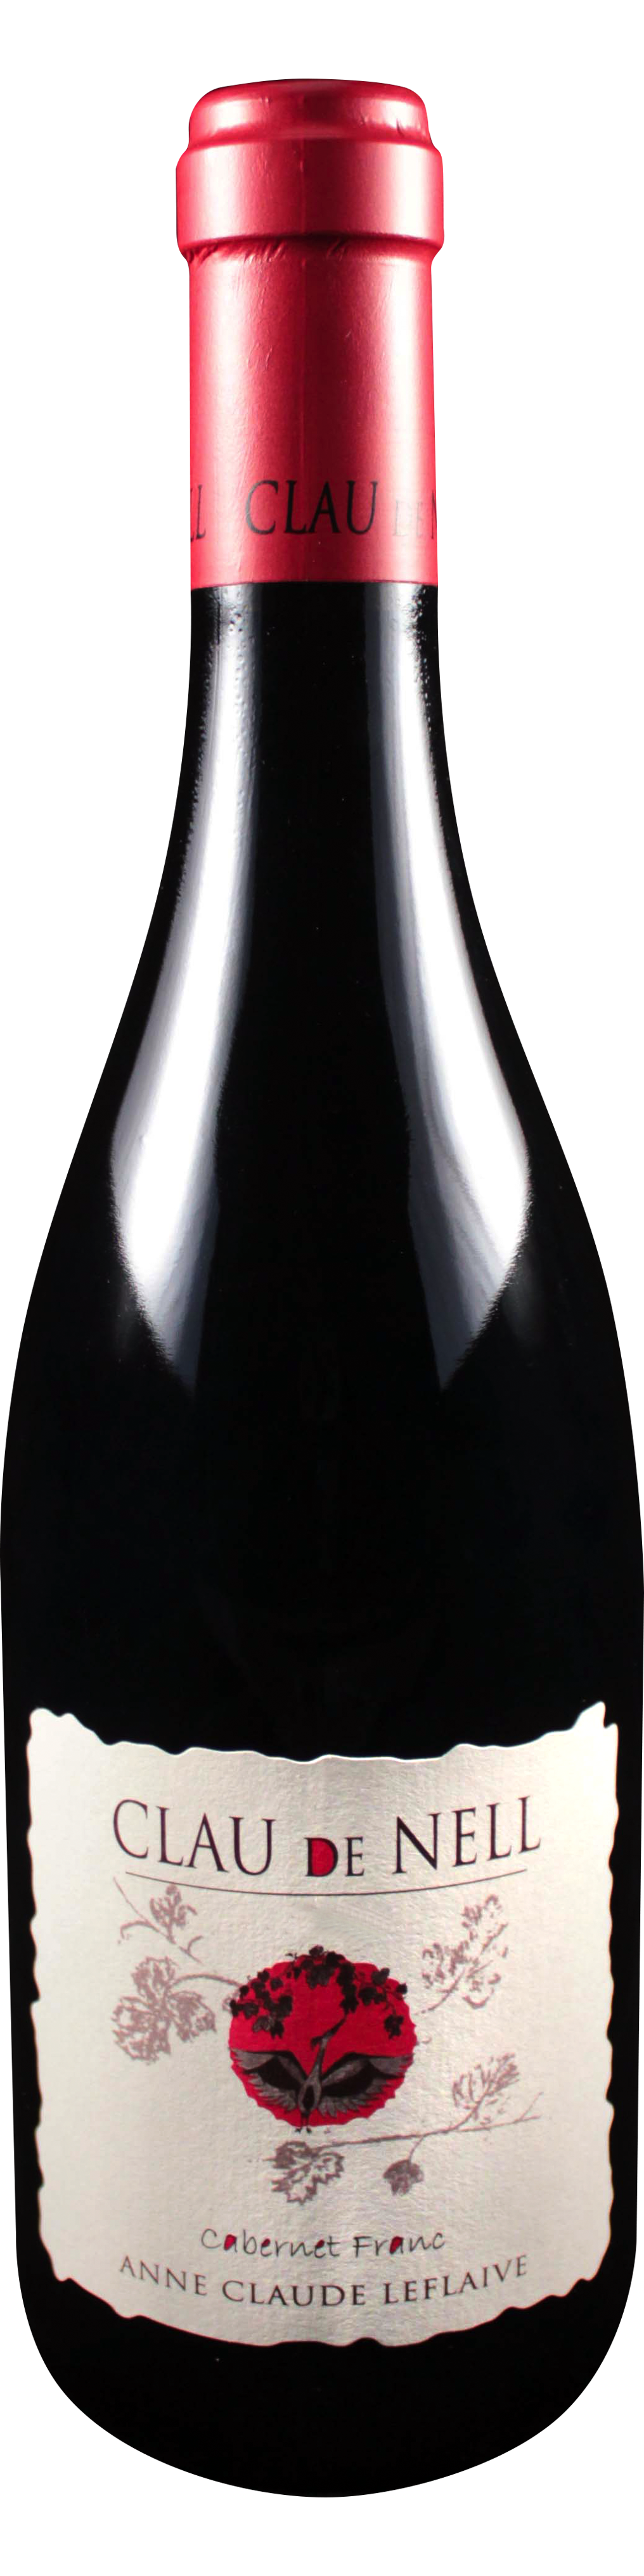 Bottle shot of 2010 Cabernet Franc/Cabernet Sauvignon